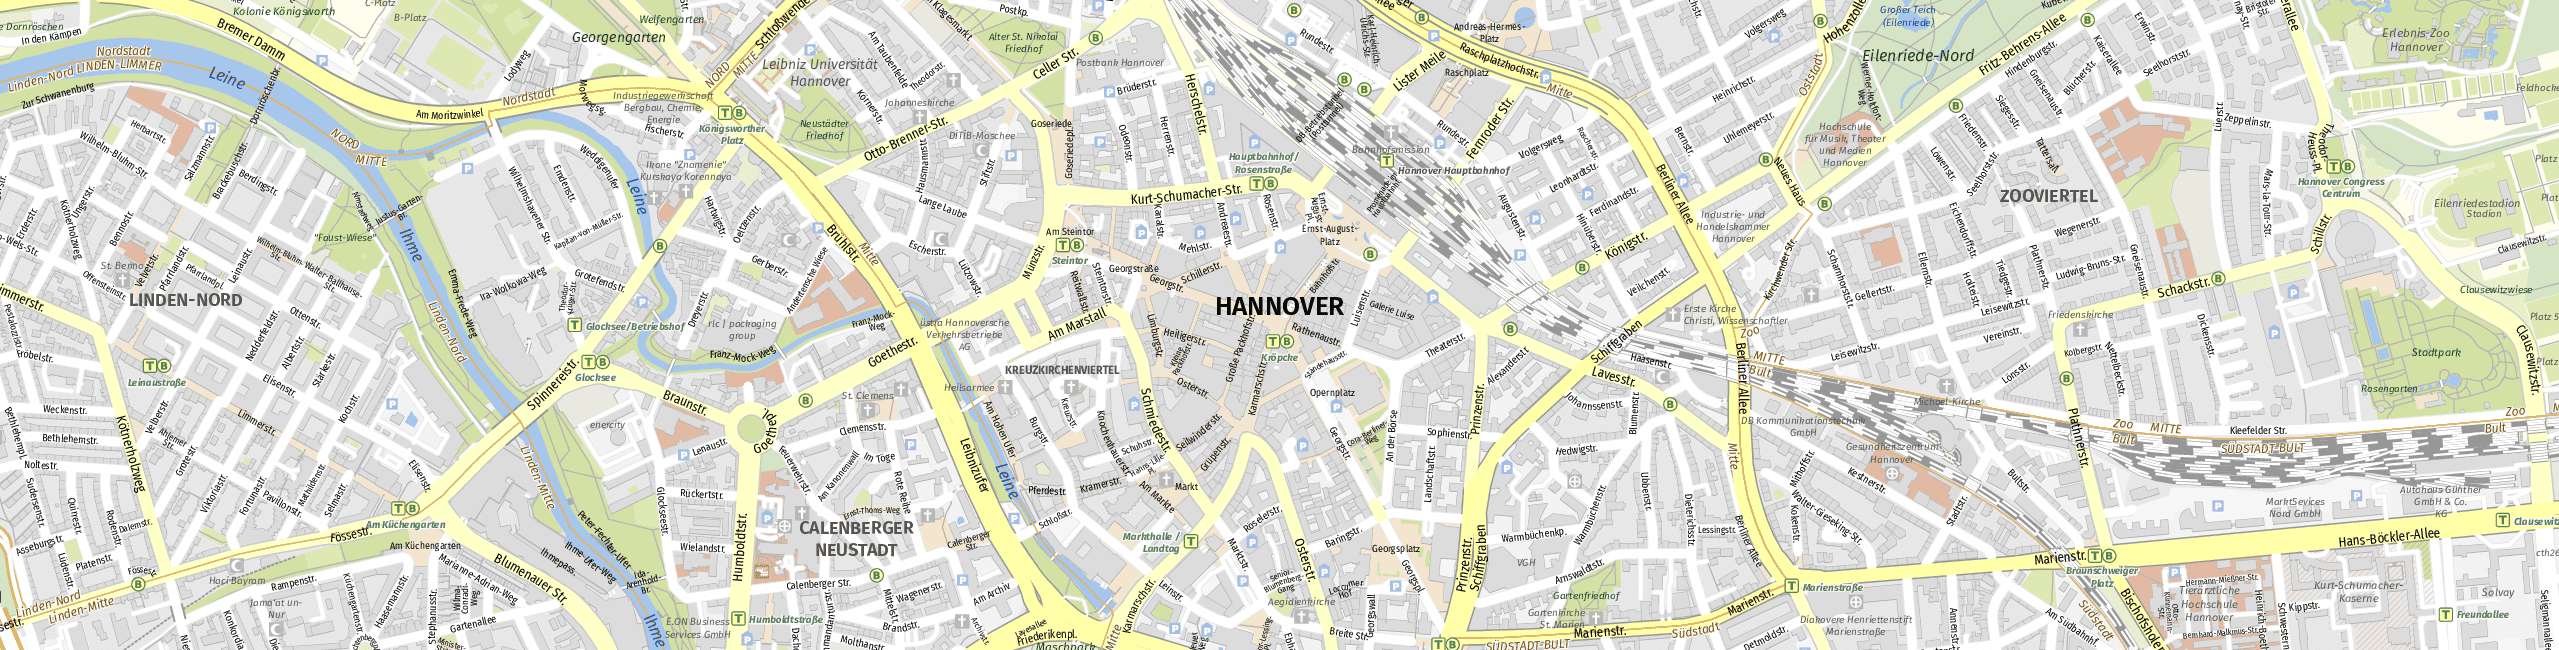 Stadtplan Hanover zum Downloaden.